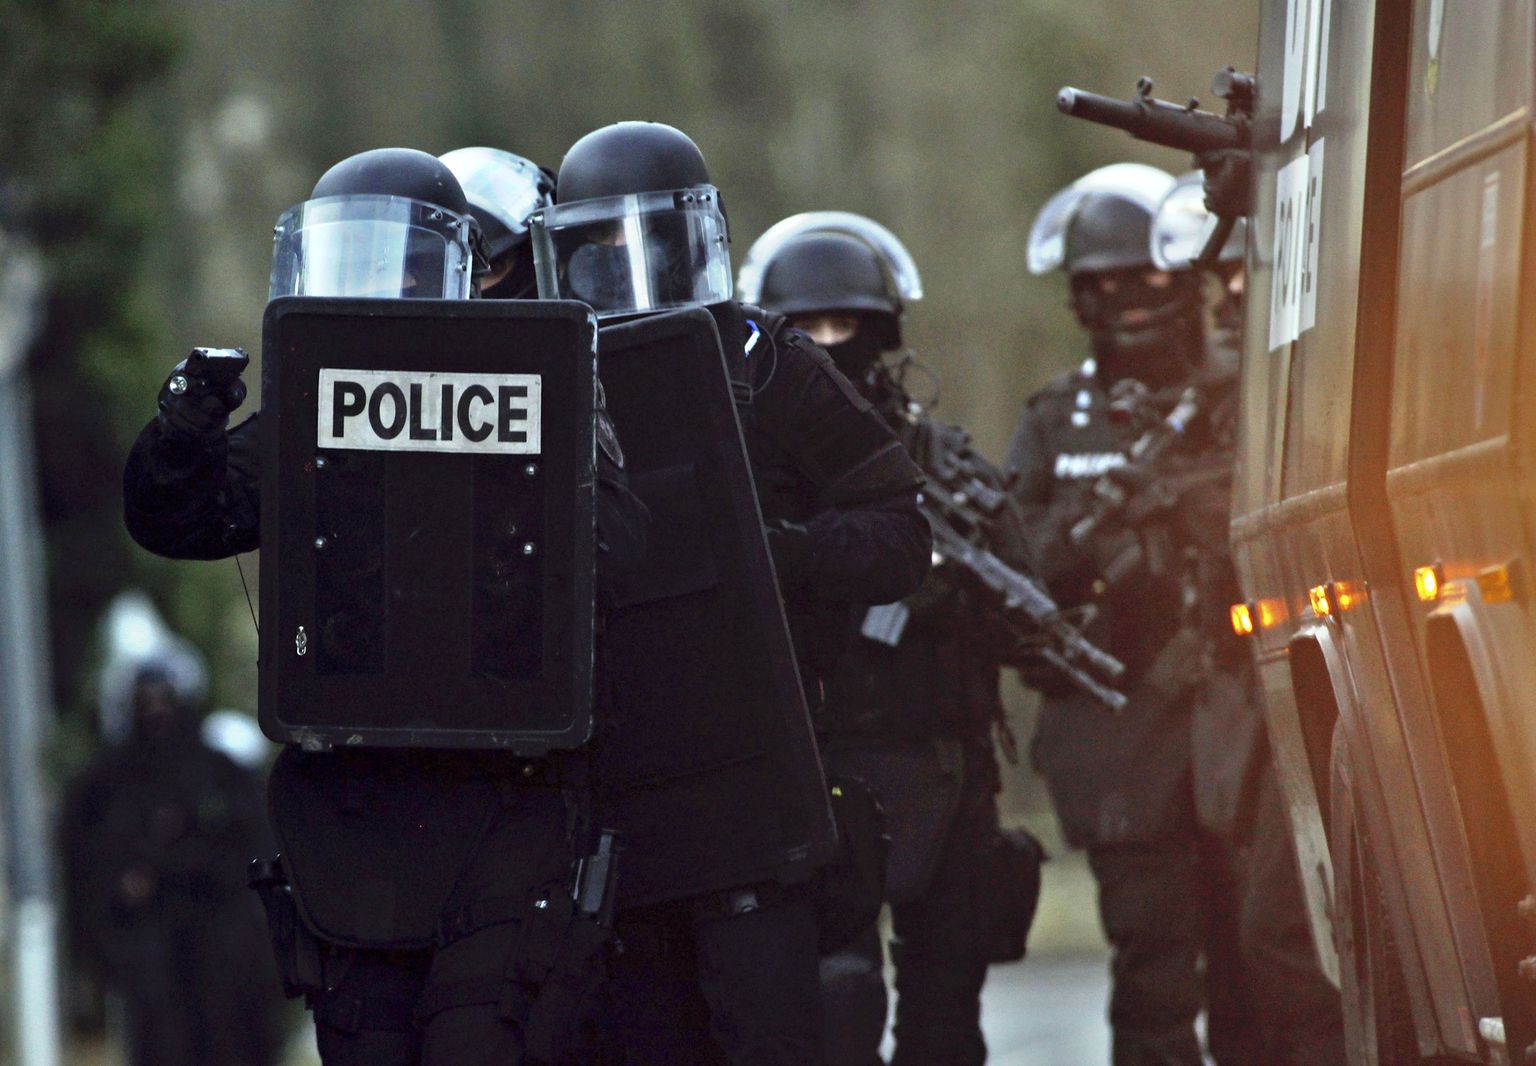 Prantsuse politsei eriüksus eile Corcy väikelinnas Põhja-Prantsusmaal. Just selles piirkonnas arvati end varjavat rünnaku korraldajaid.